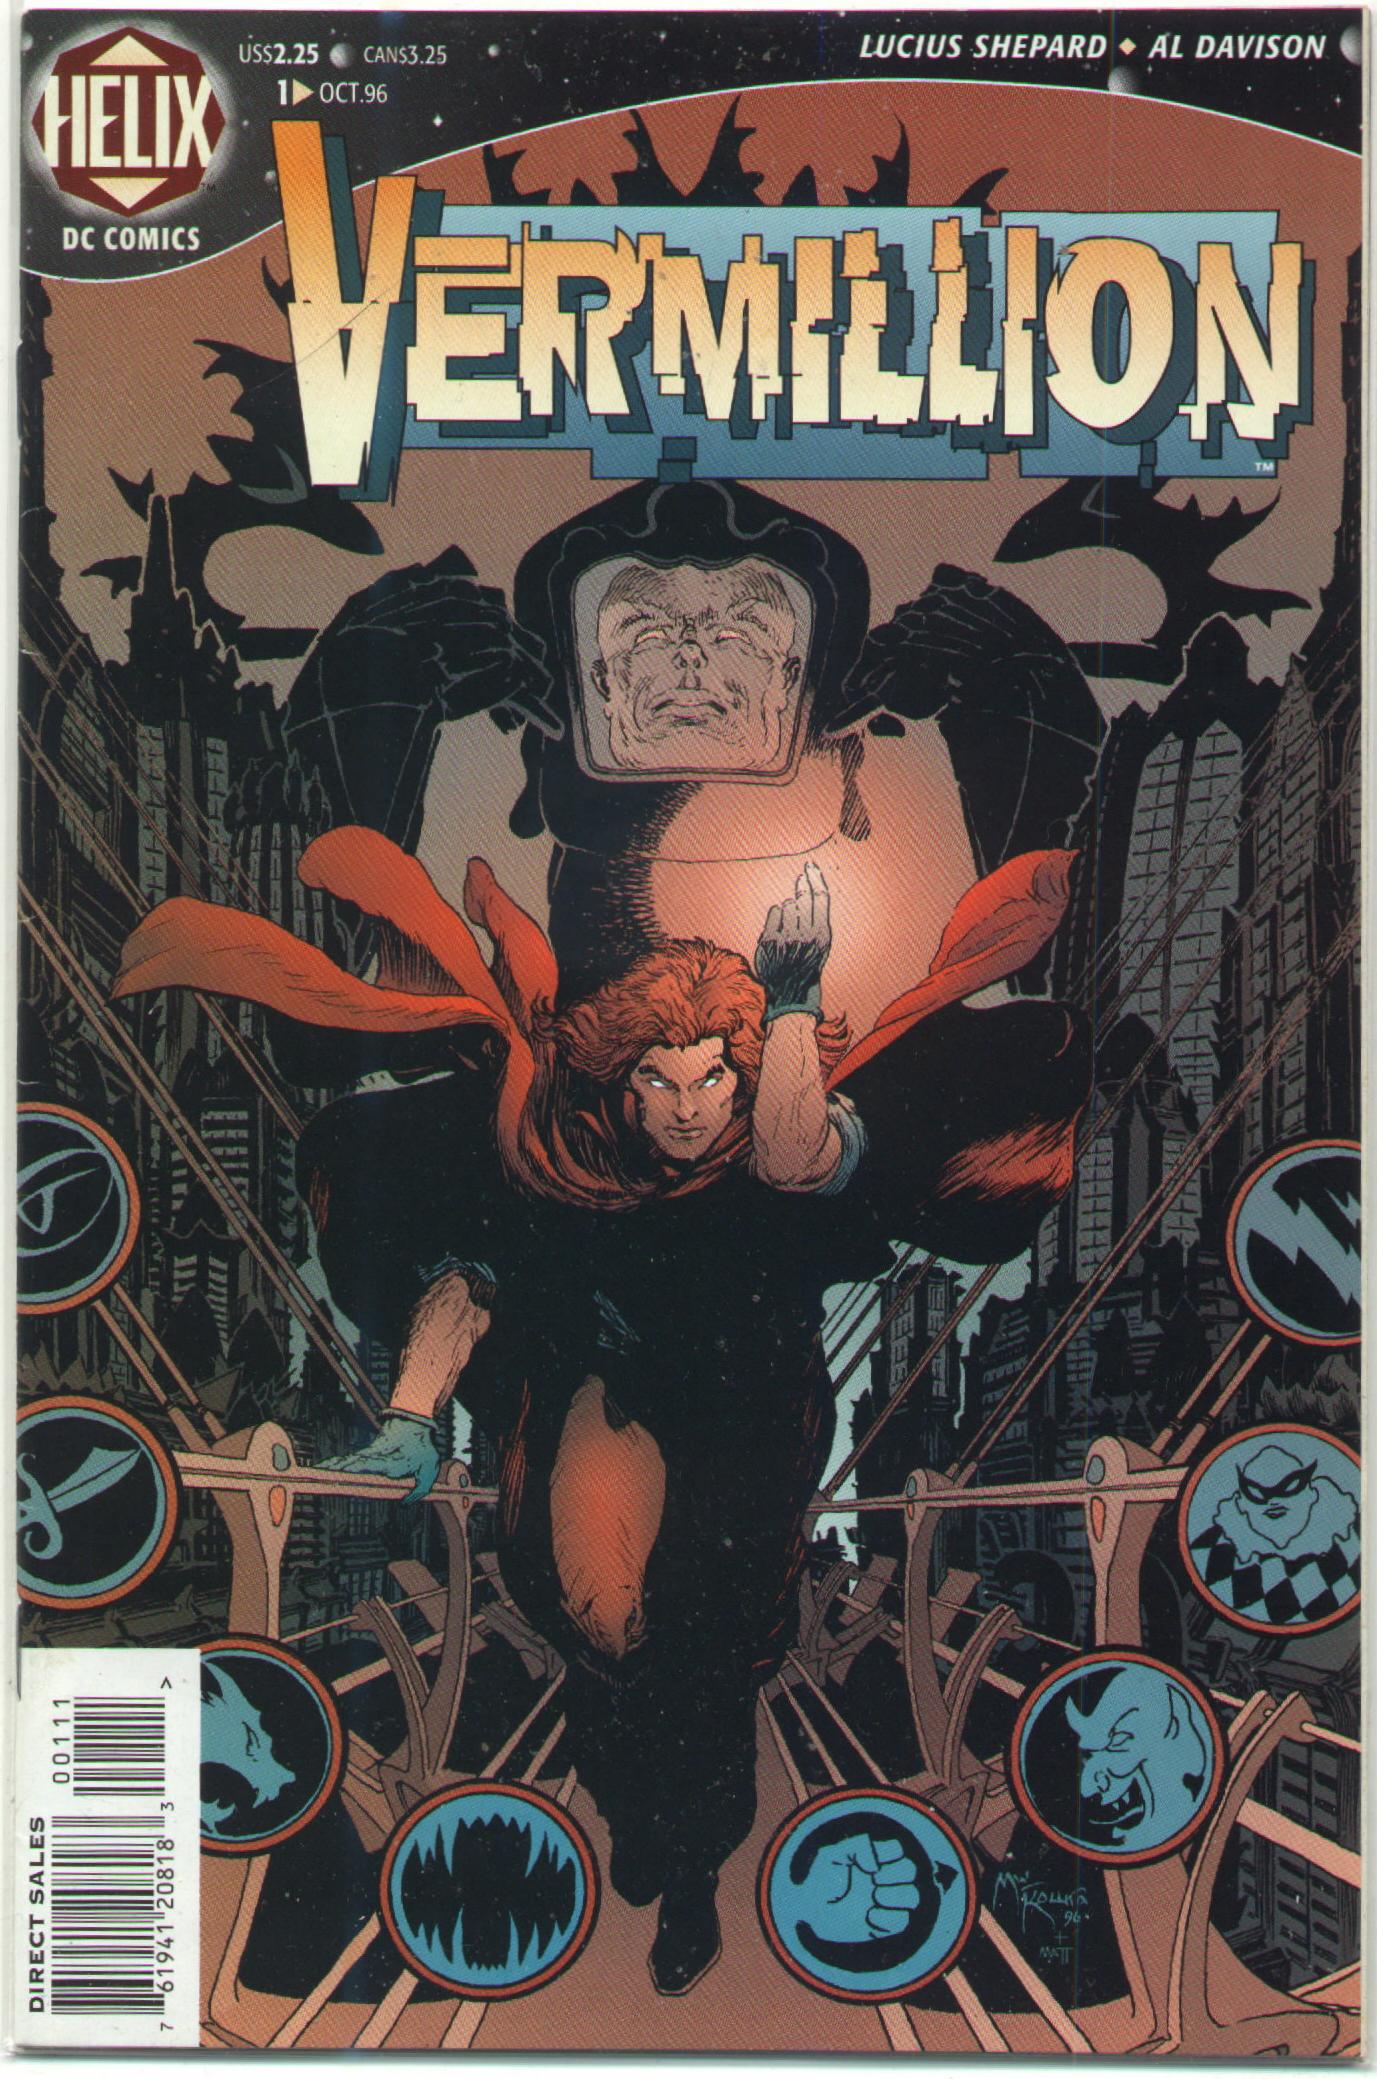 Vermillion Vol. 1 #1